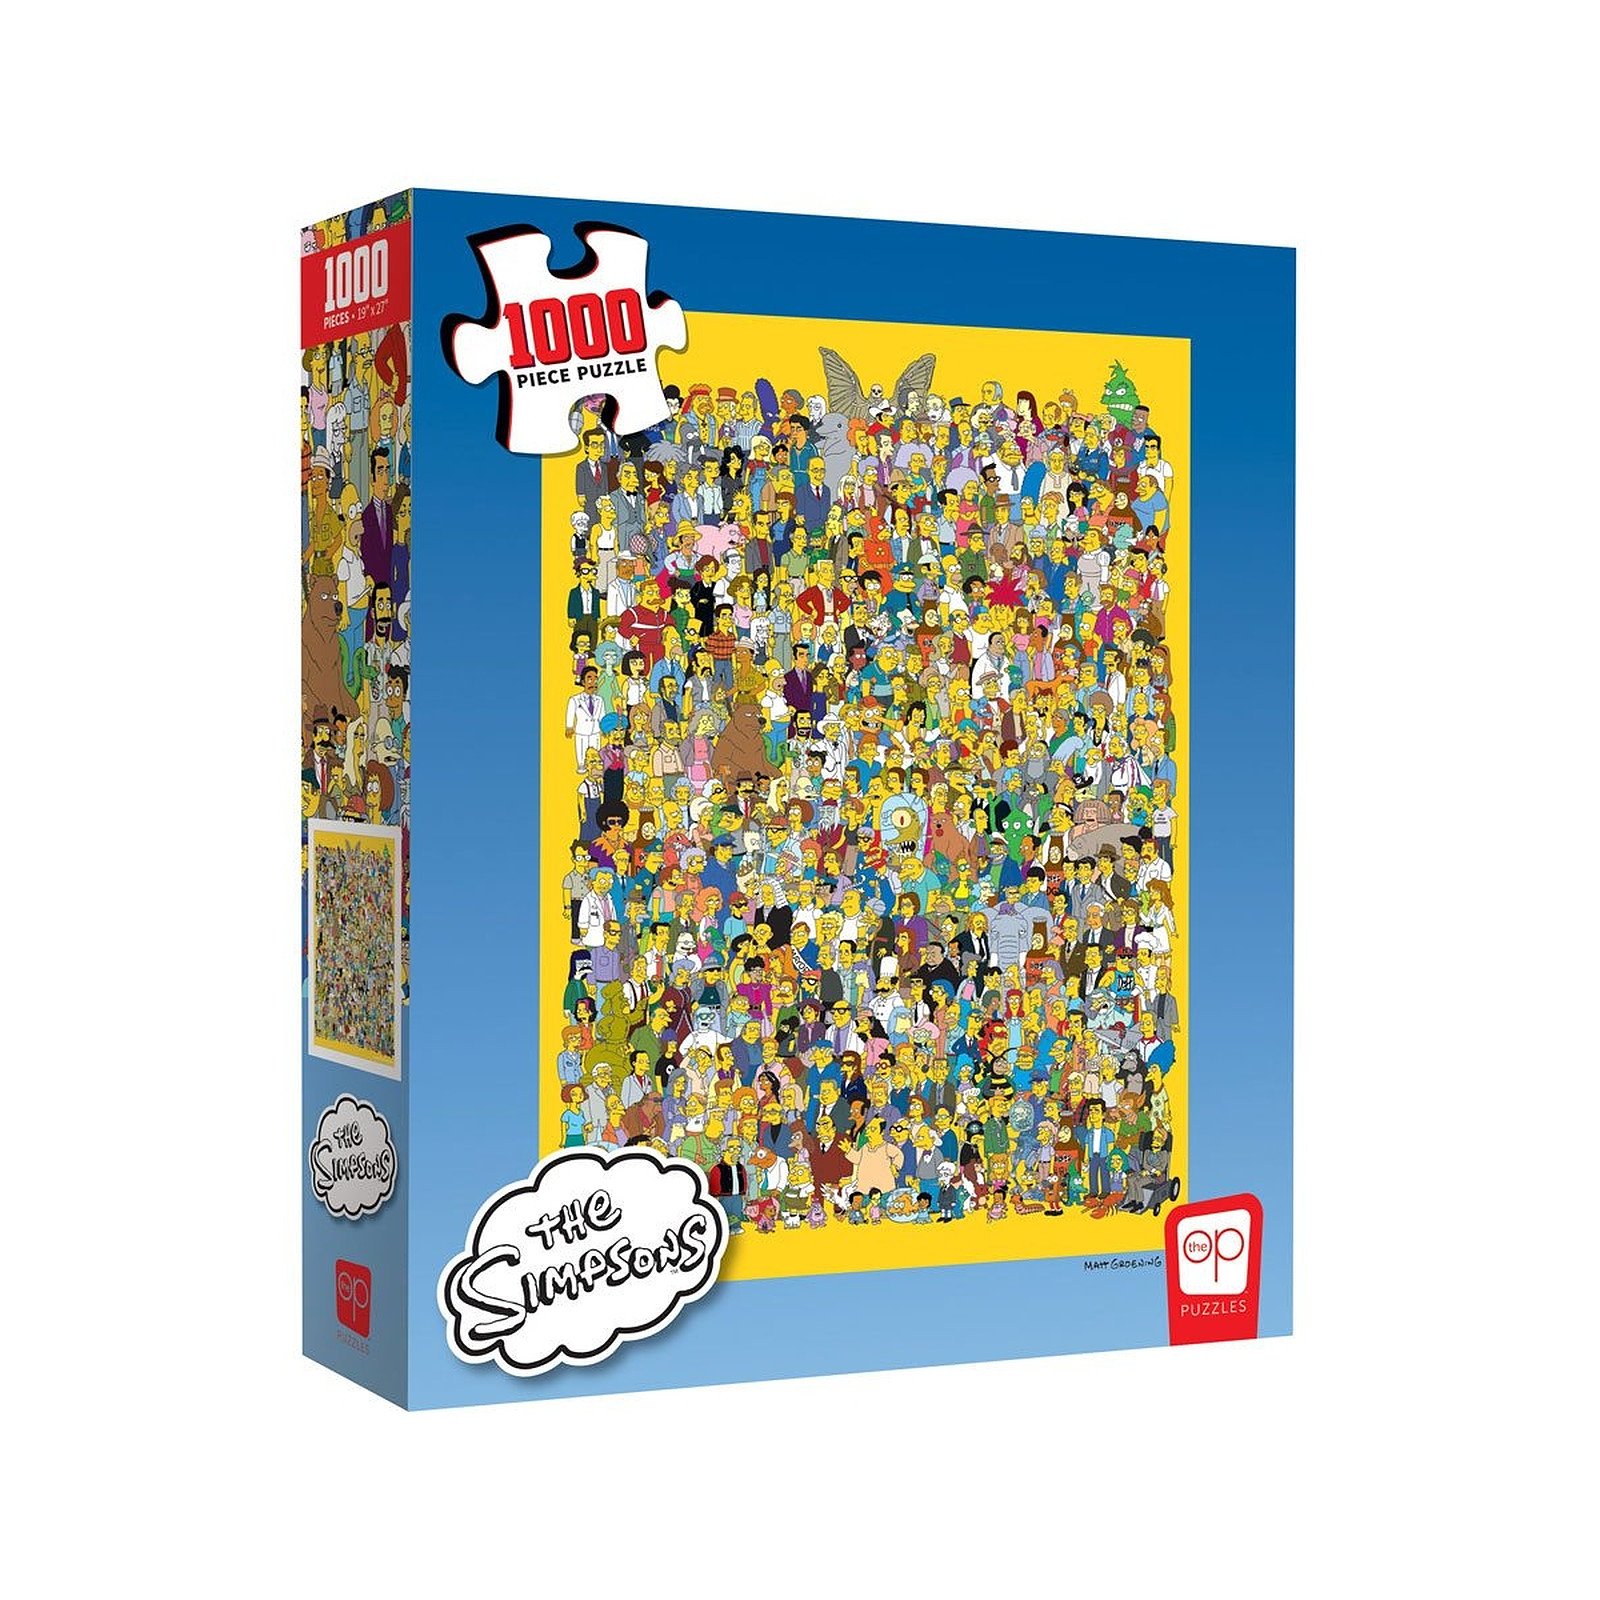 Simpsons - Puzzle Cast of Thousands (1000 pièces) - Puzzle Usaopoly